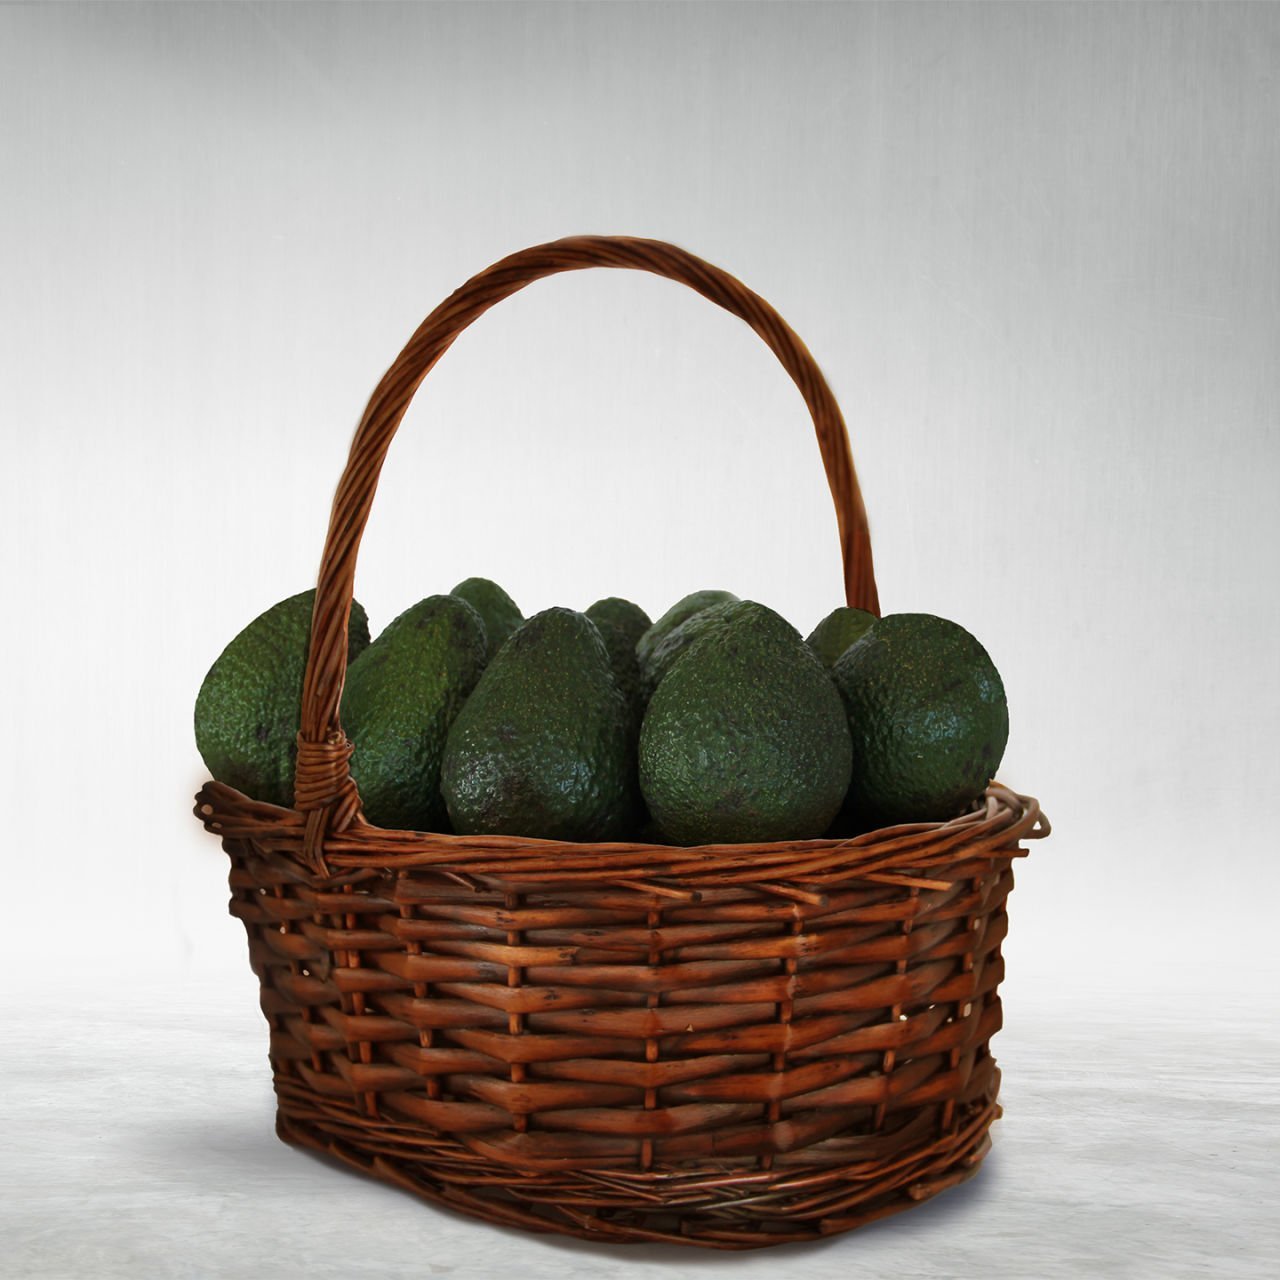 Пищевая ценность авокадо